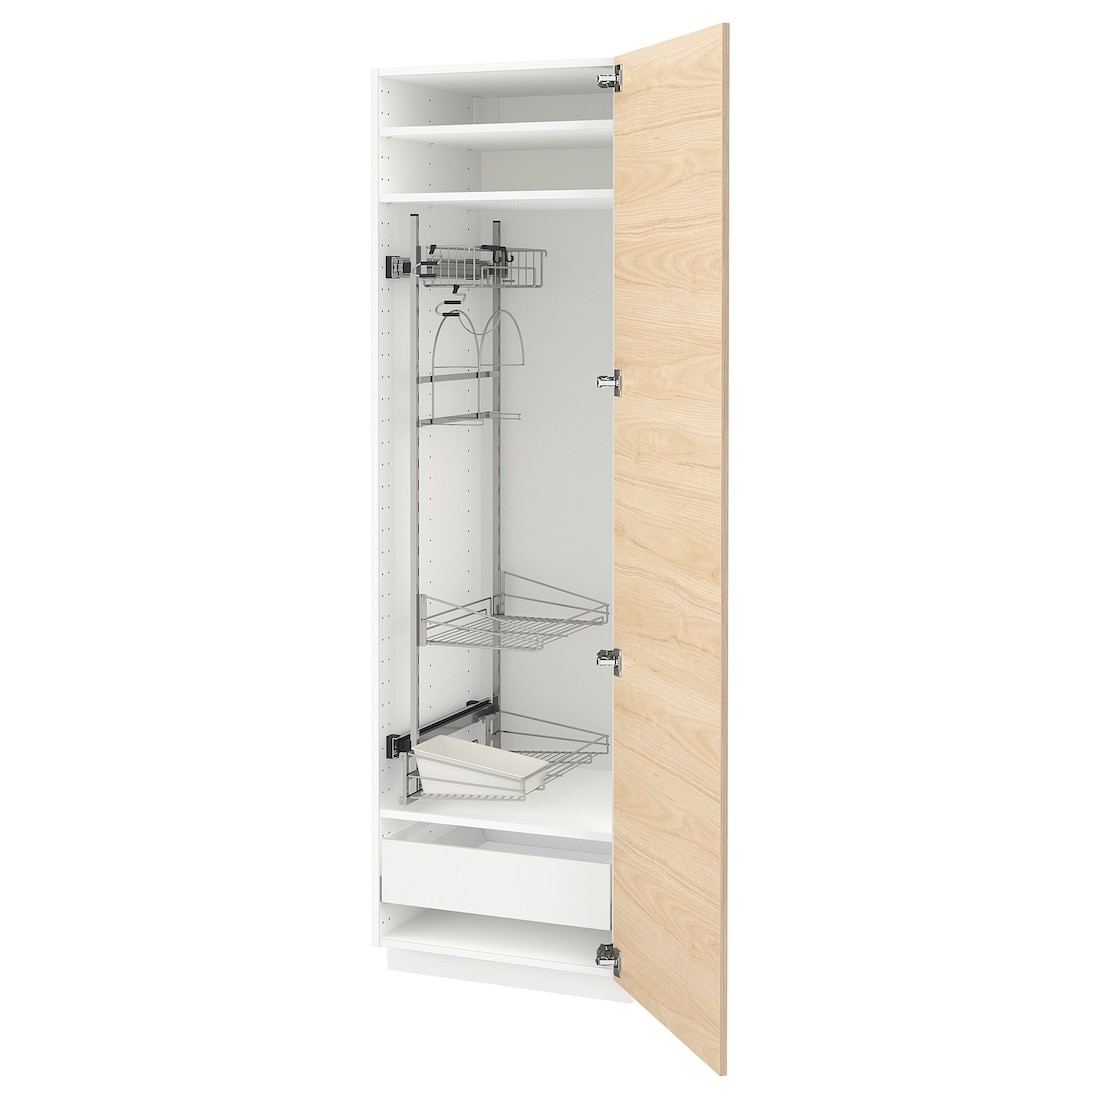 METOD МЕТОД / MAXIMERA МАКСИМЕРА Высокий шкаф с отделением для аксессуаров для уборки, белый / Askersund узор светлый ясень, 60x60x200 см